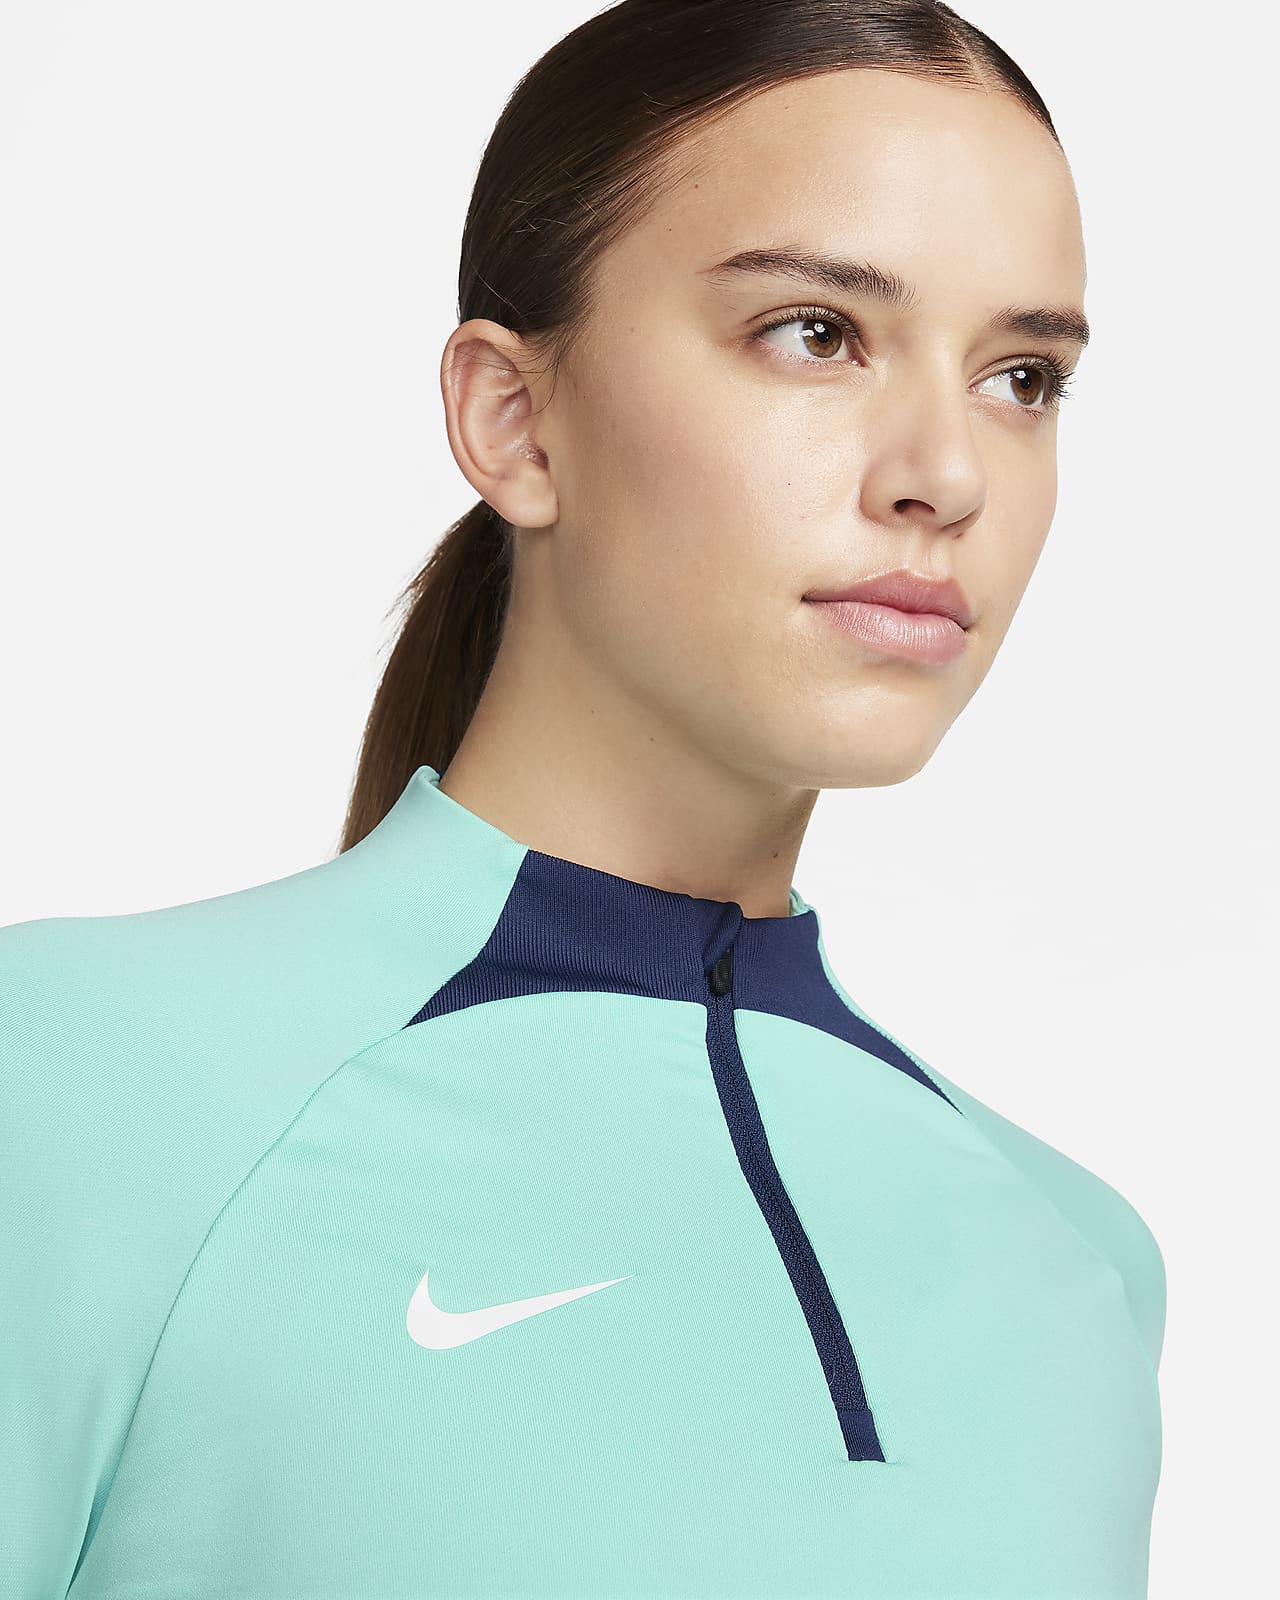 England Strike Women's Nike Dri-FIT Knit Football Drill Top. Nike CA